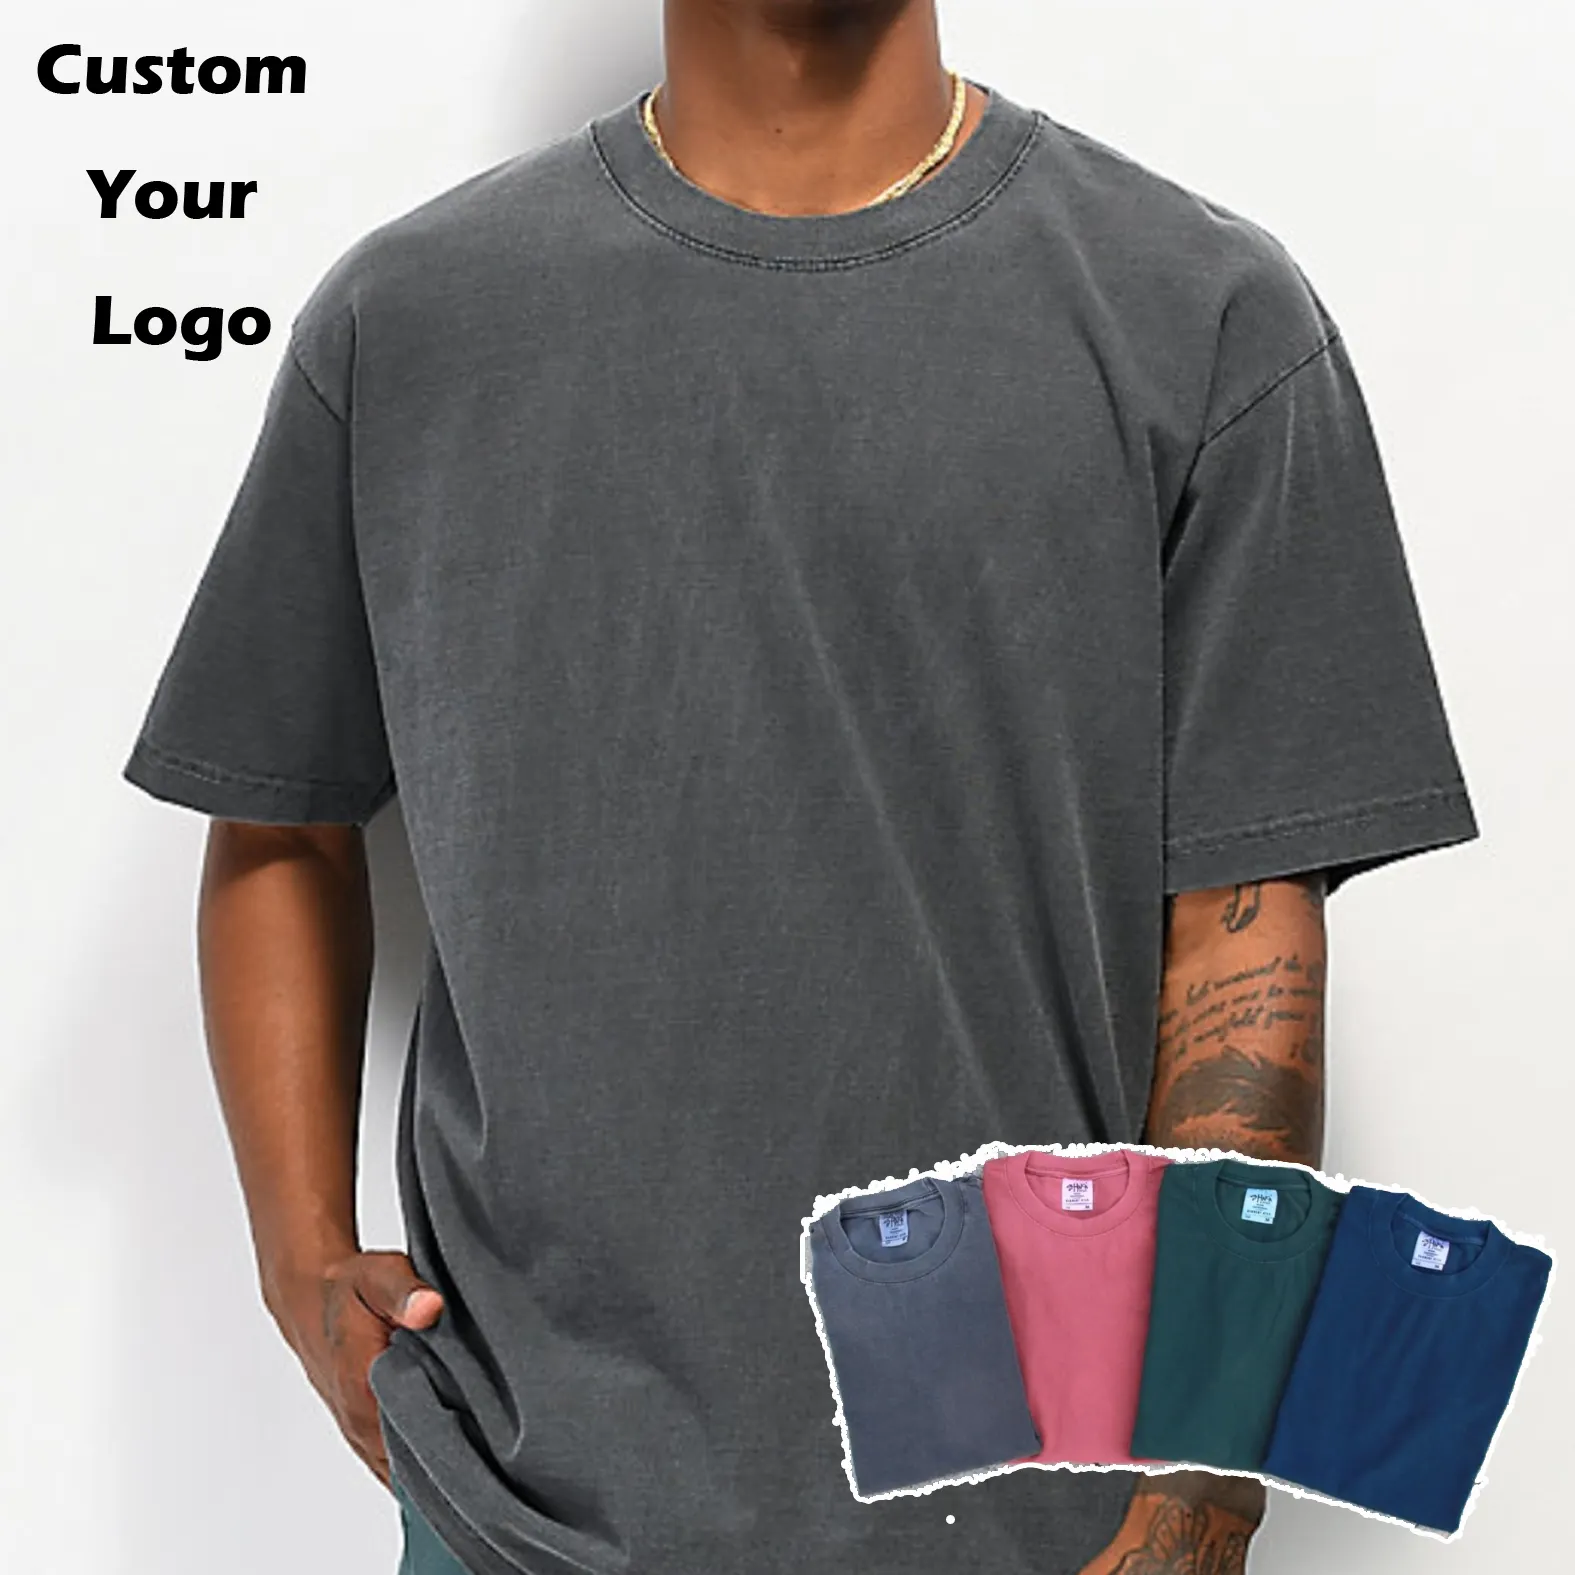 फैशन OEM थोक कस्टम लोगो मुद्रण Tshirts कपास पुरुषों की एसिड धोने विंटेज खनिज धो सादे प्लस आकार के टी-शर्ट